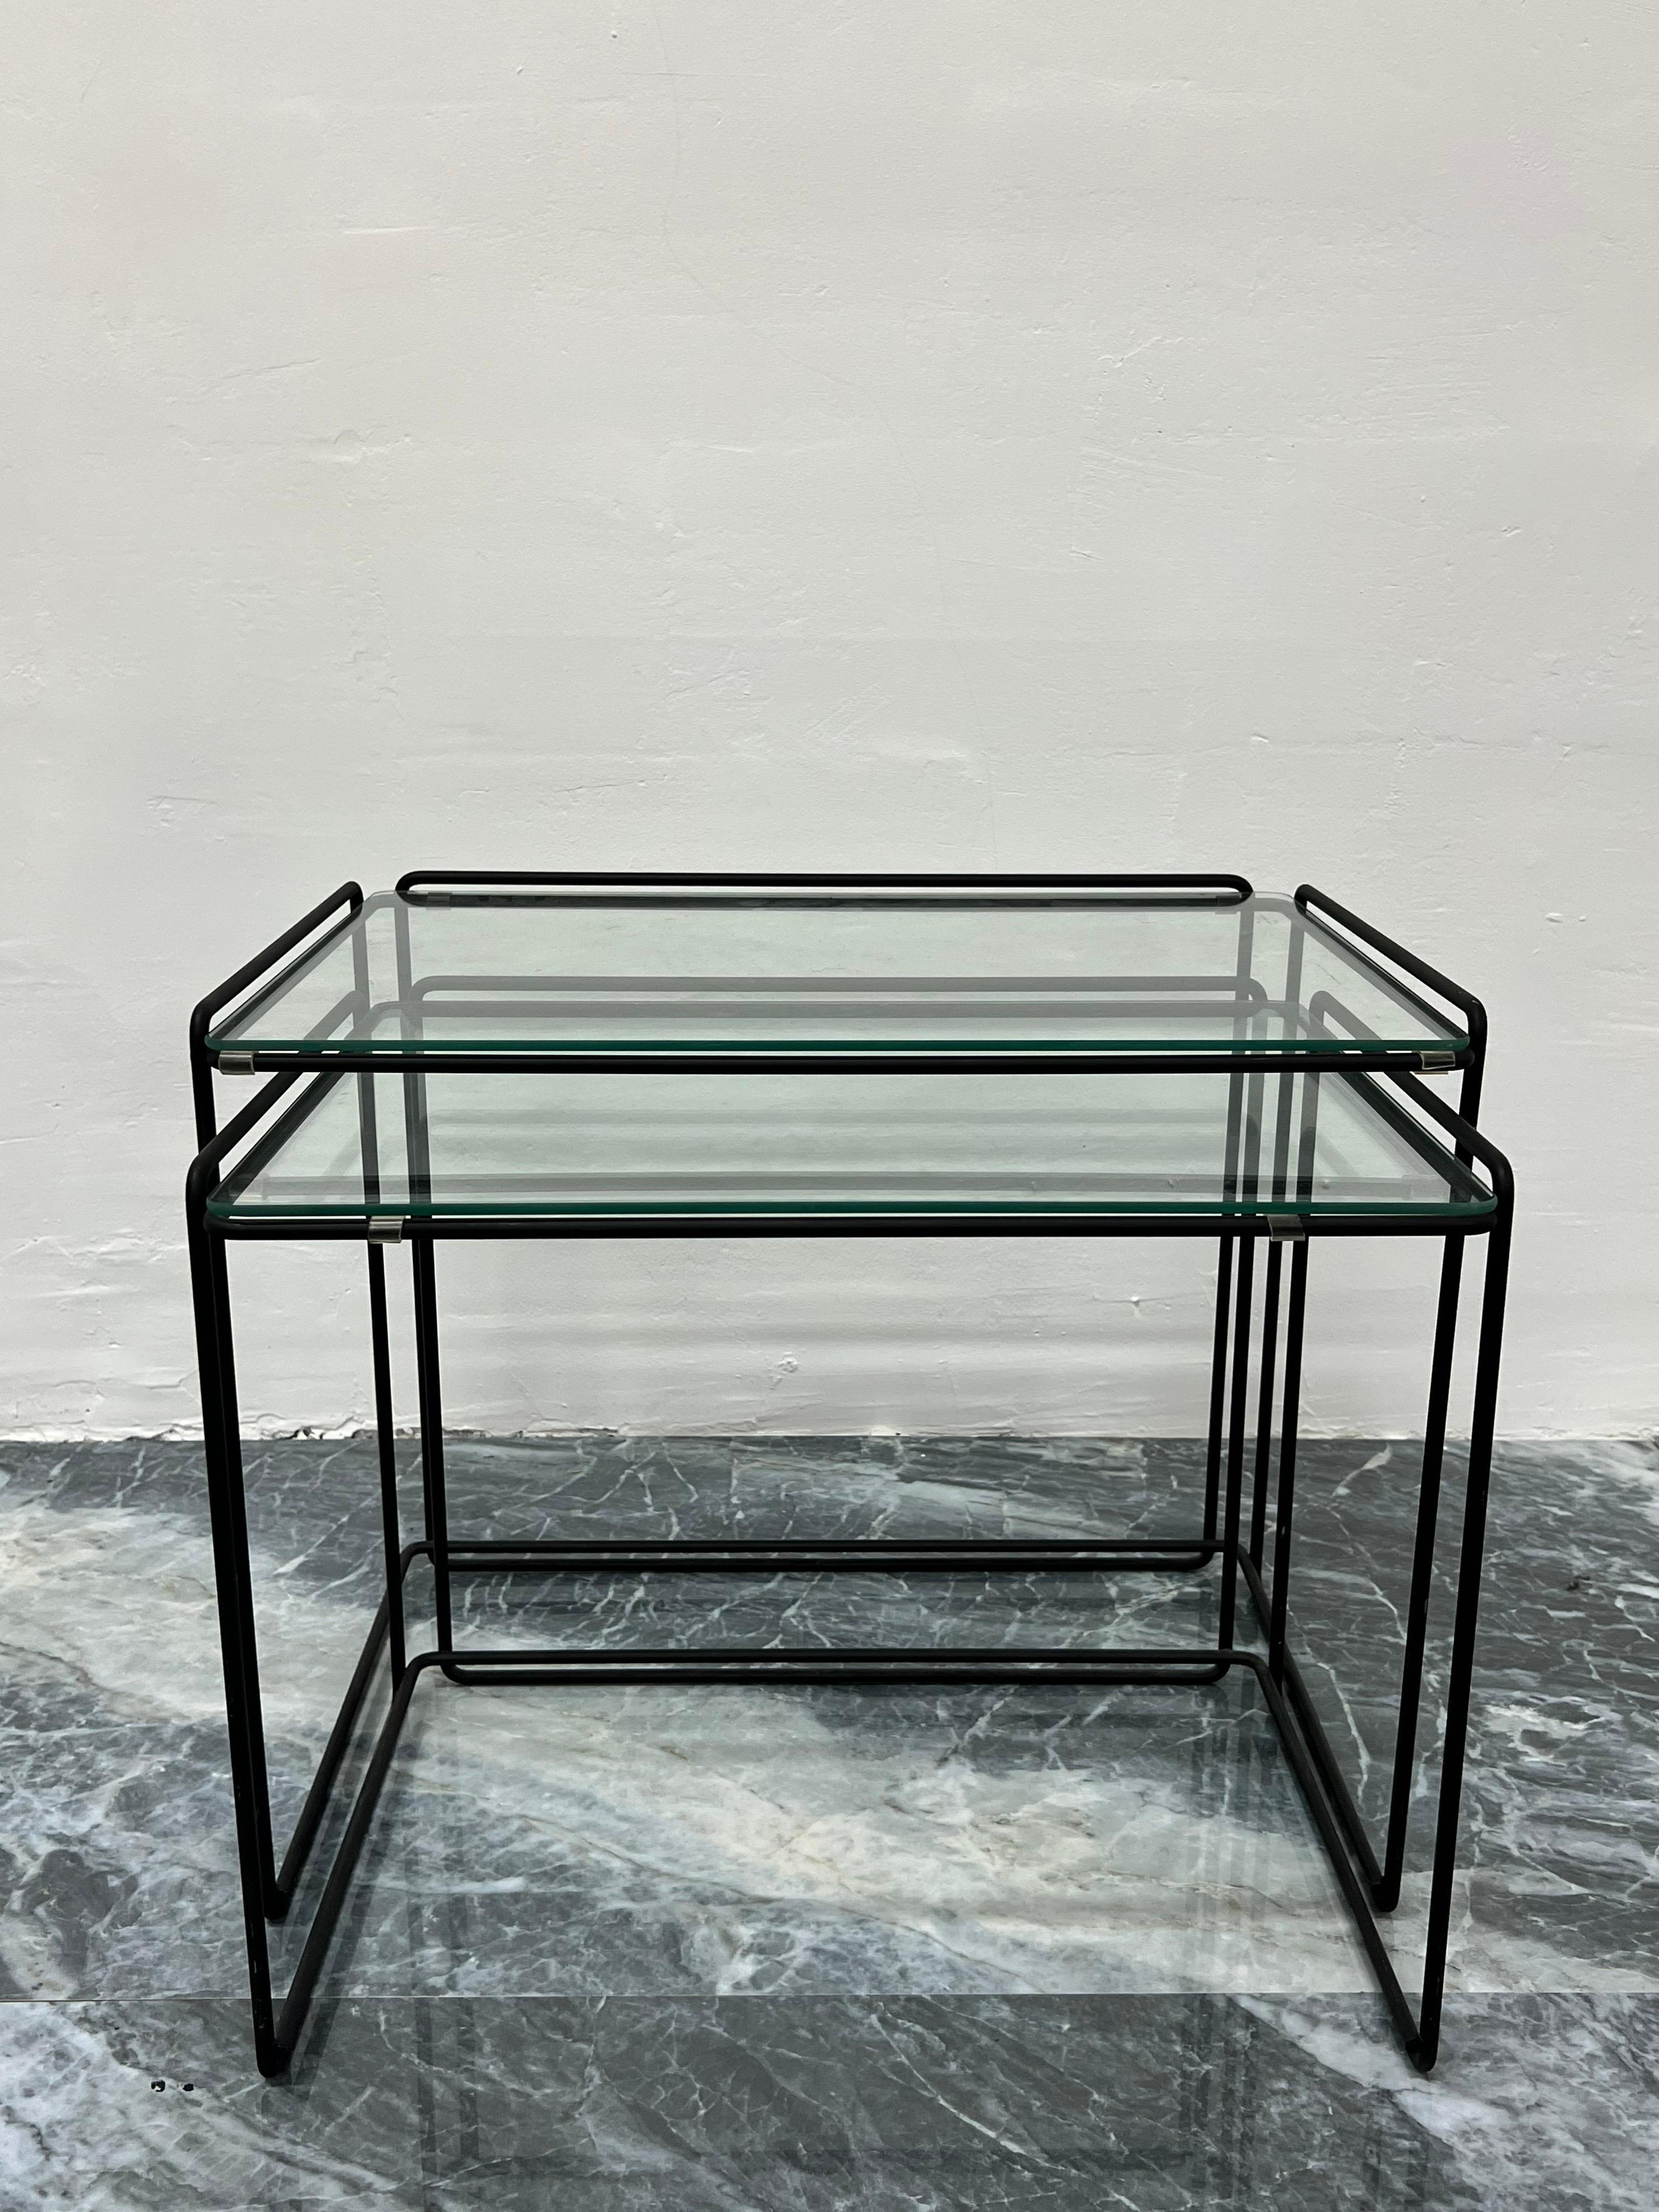 Satz von zwei Tischen, entworfen von dem französischen Künstler Max Sauze und hergestellt von Groupe S.A. France, um 1970. Die Struktur besteht aus mattschwarzen Stahlstäben und alle Tische behalten ihr ursprüngliches Klarglas.

Abmessungen:
Groß